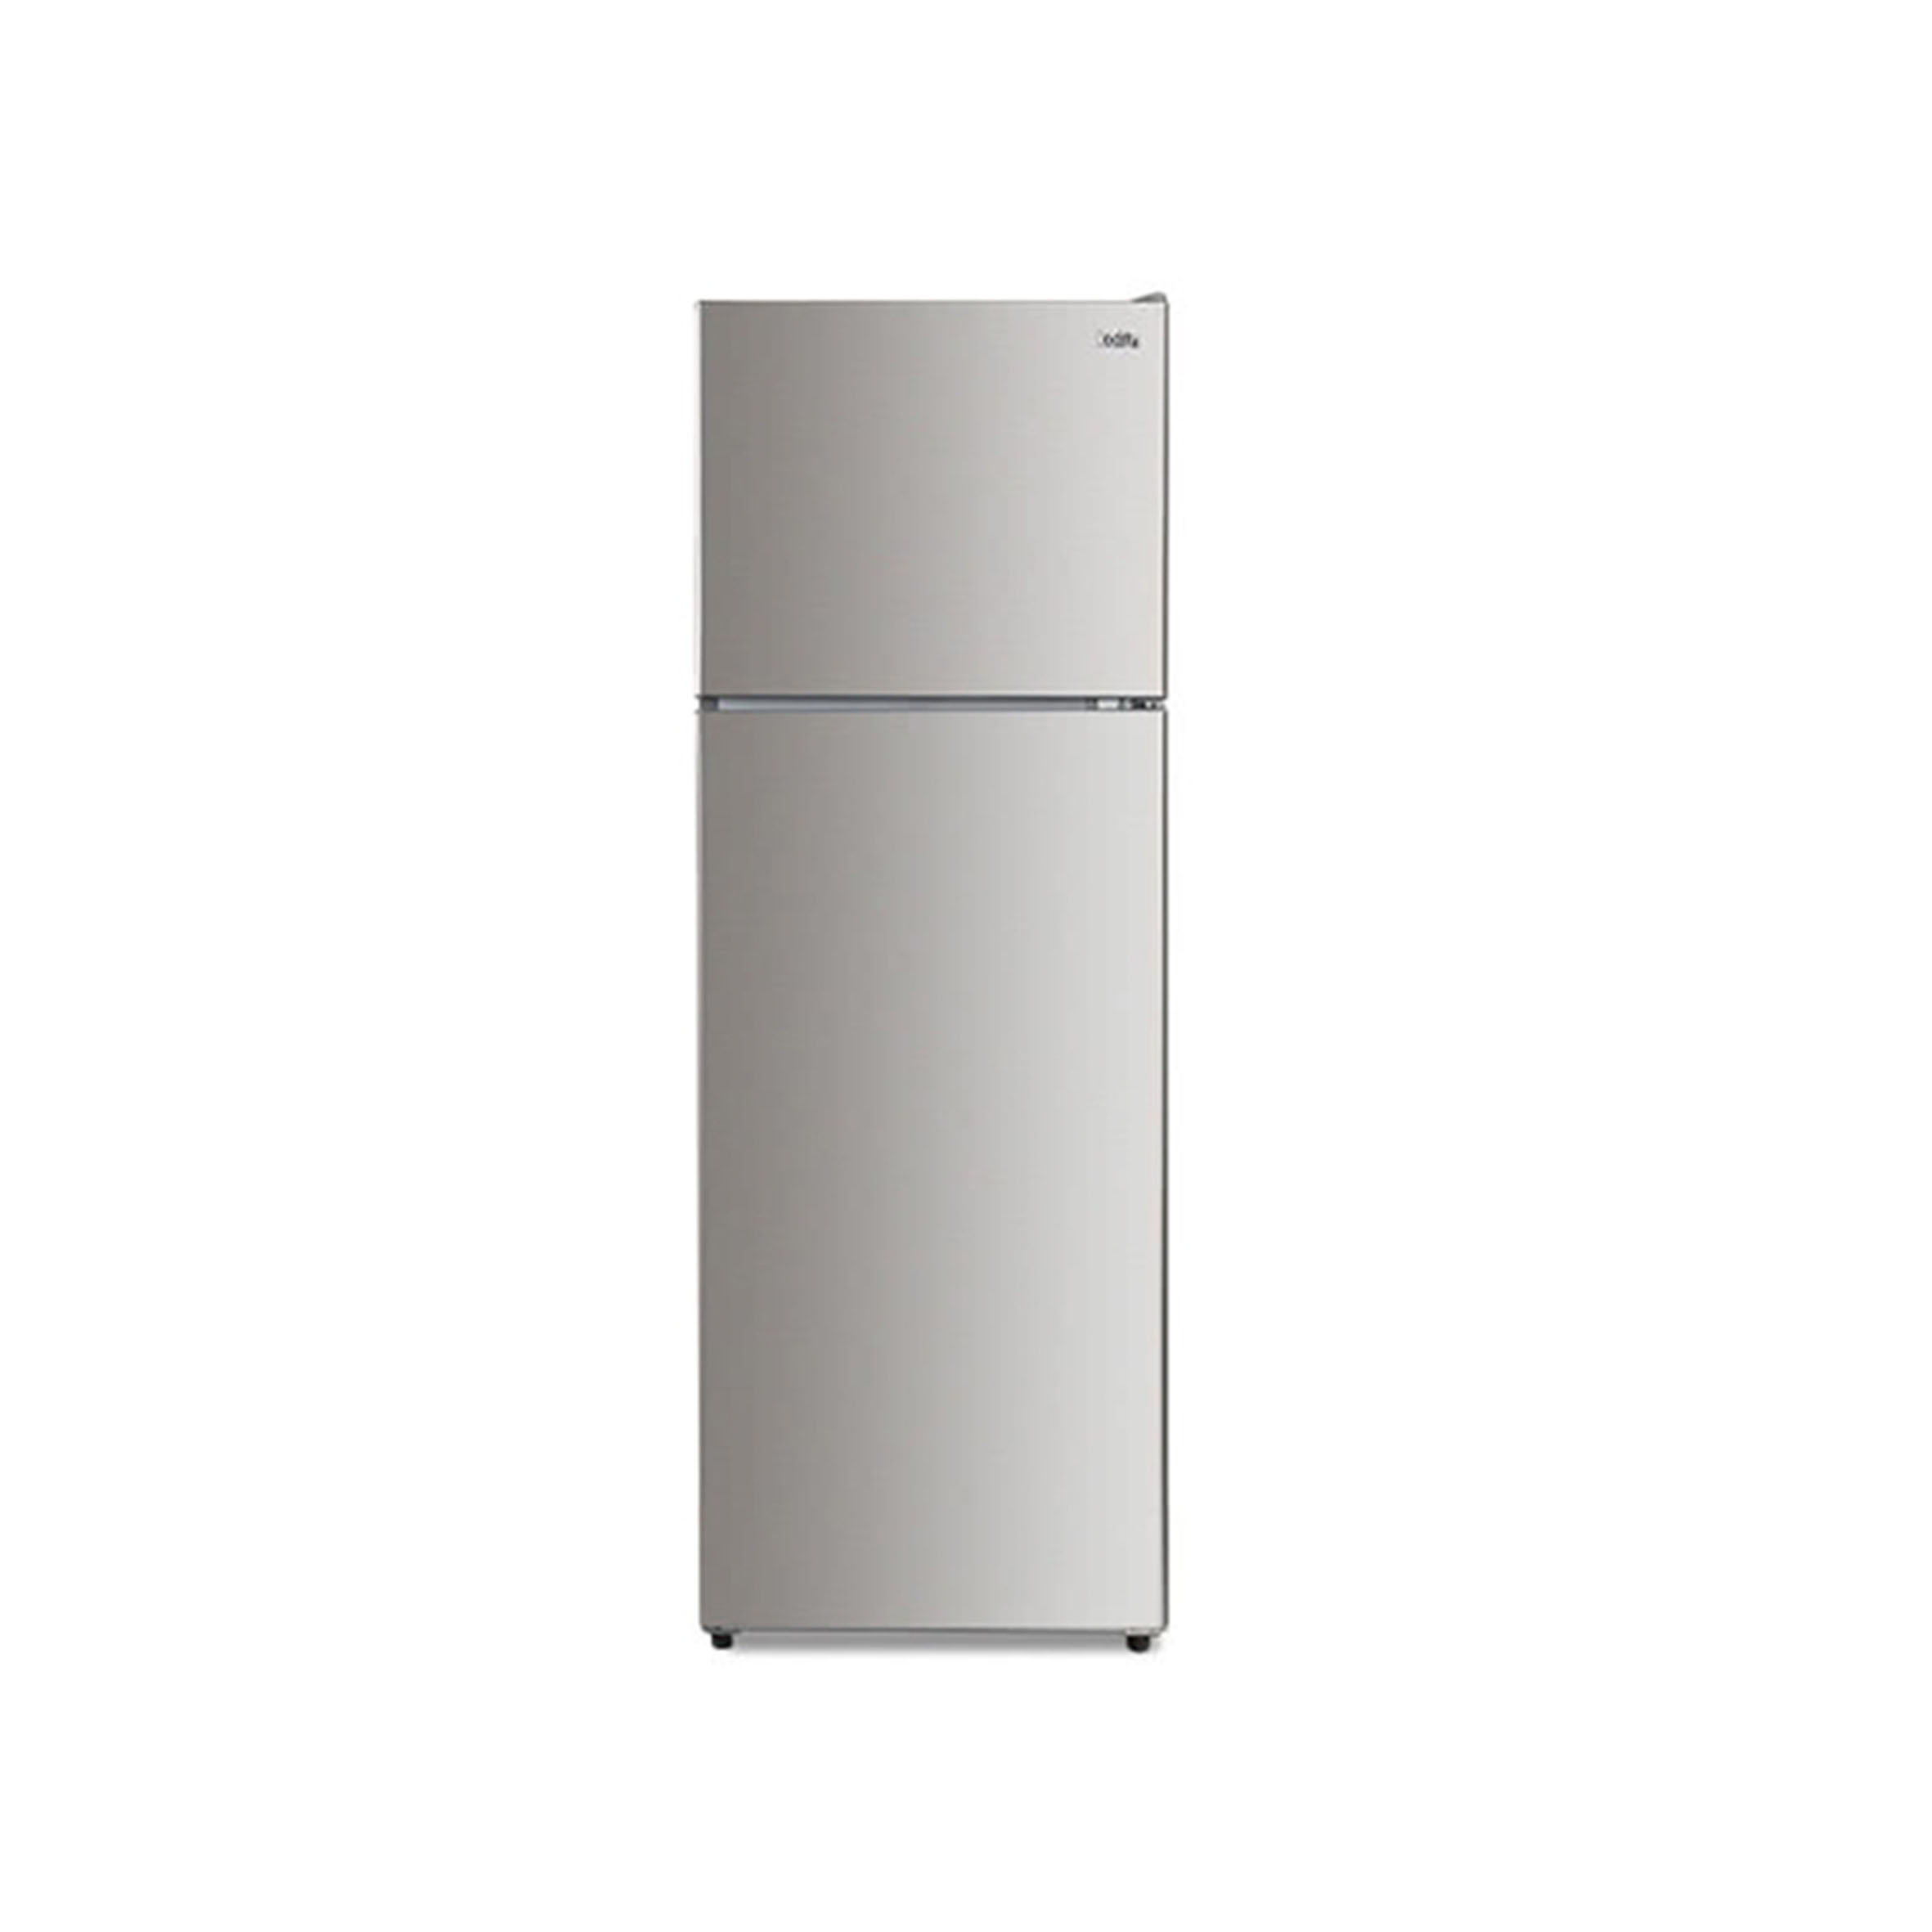 Kolin 歌林 326公升一級能效變頻雙門冰箱-不鏽鋼(KR-233V03) 無卡分期